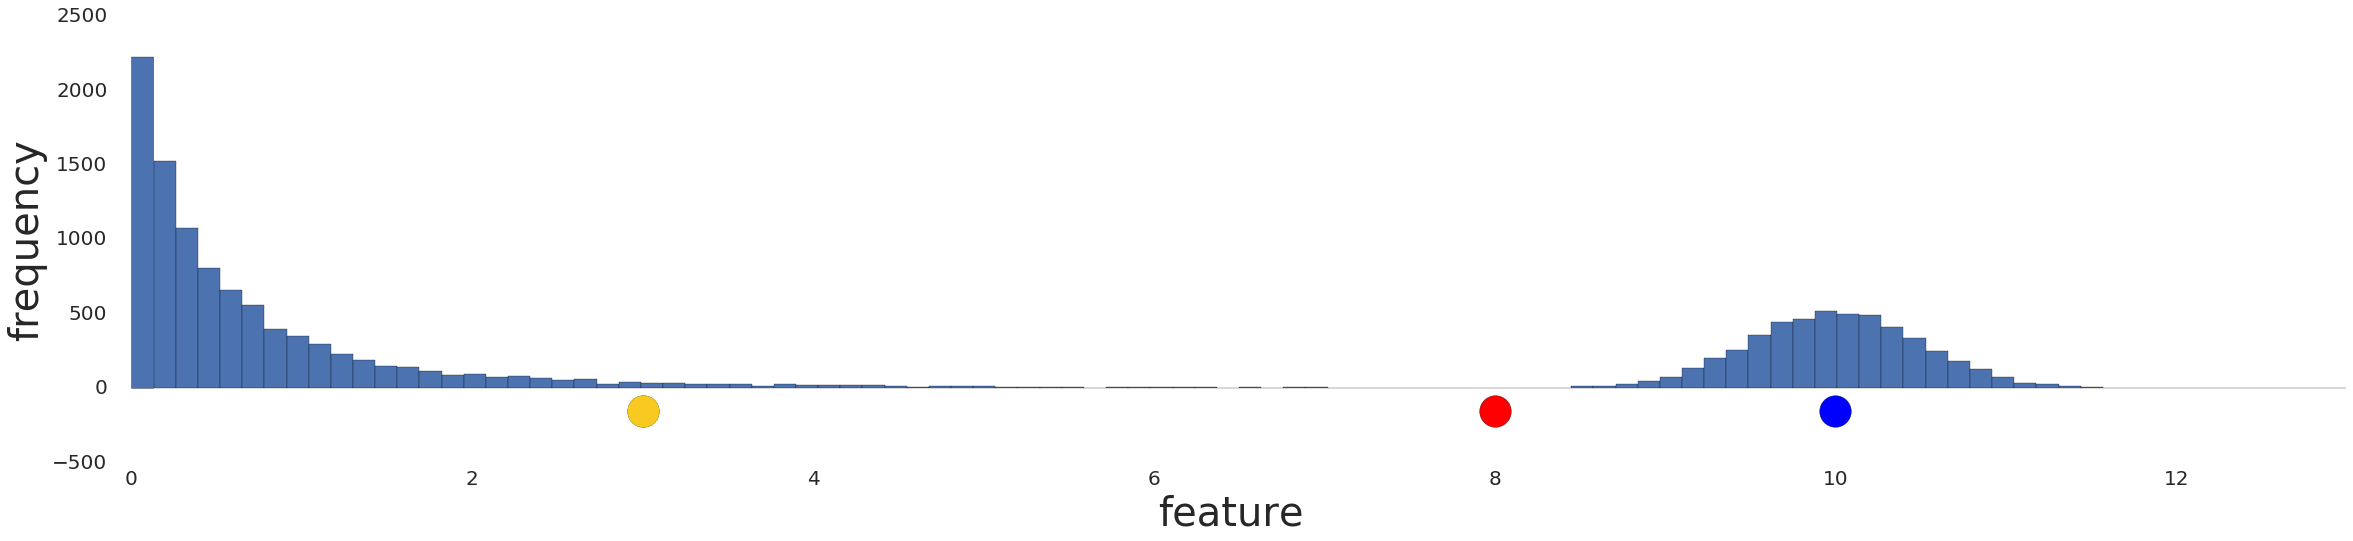 Un grafo que muestra una distribución de datos antes de cualquier procesamiento previo